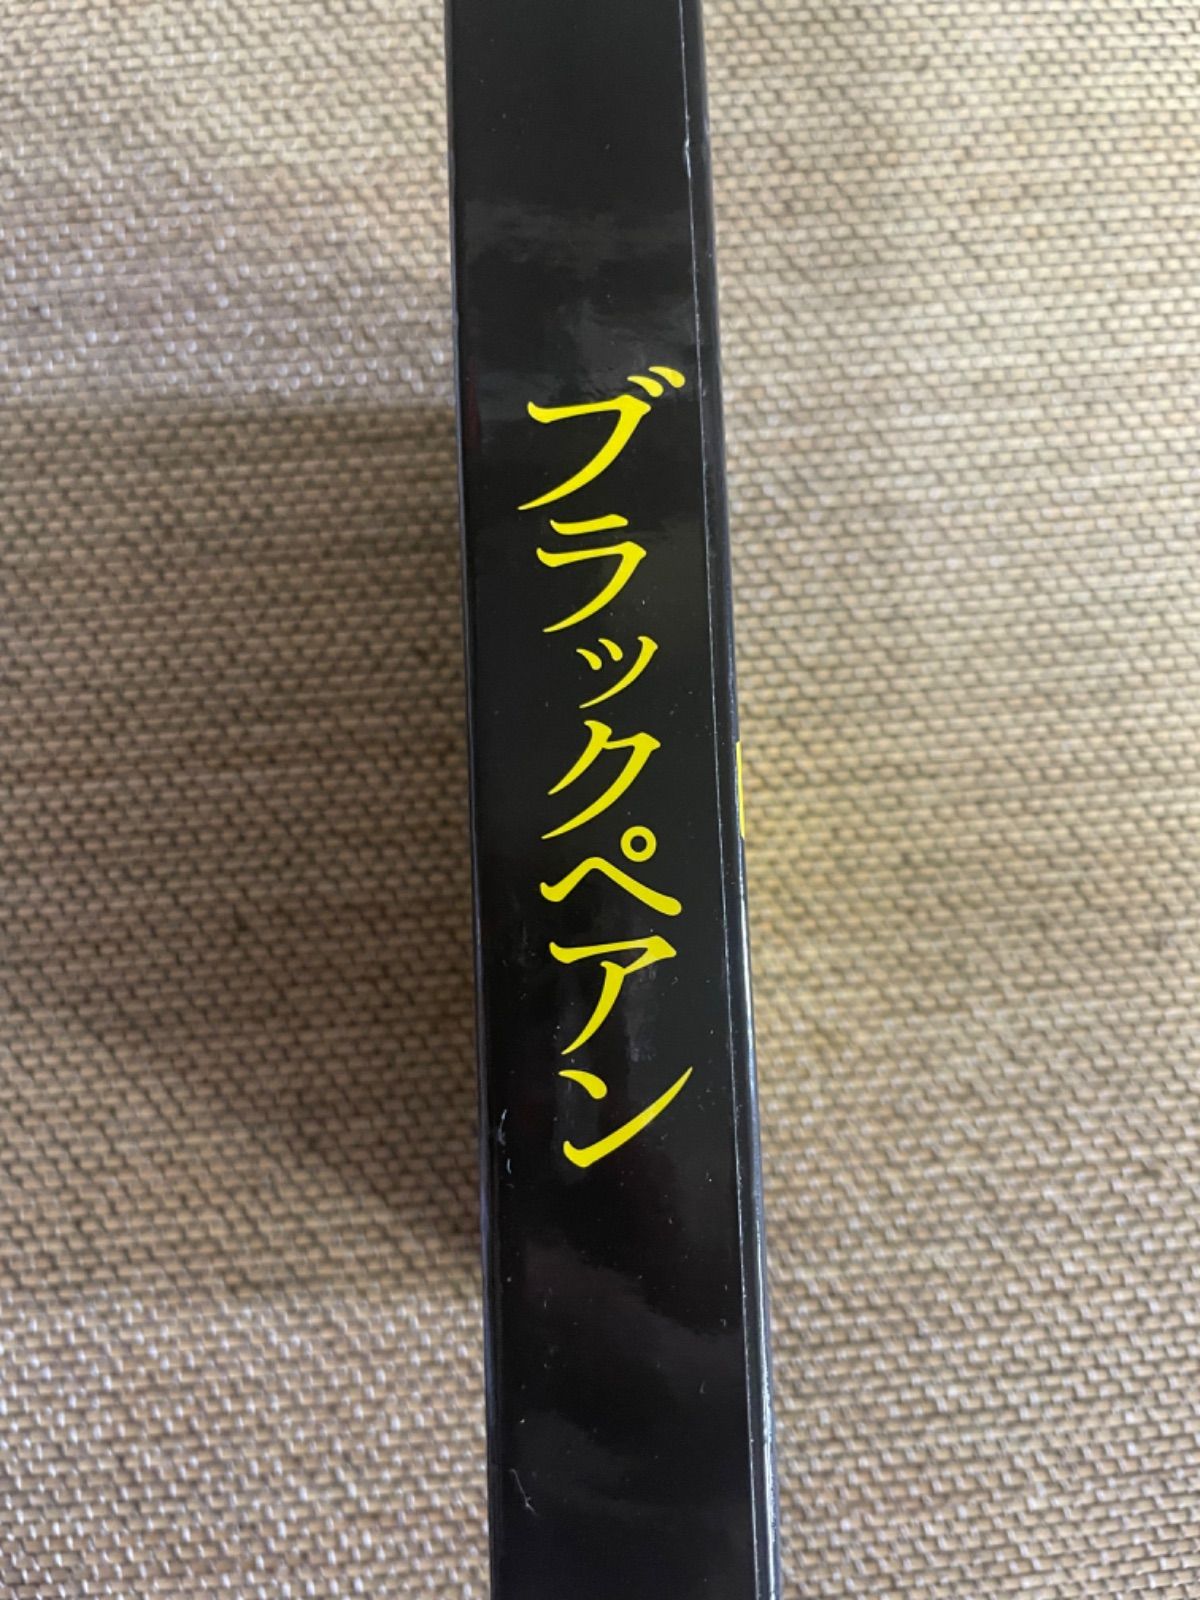 ブラックペアン DVD-BOX〈6枚組〉 空き箱のみ - メルカリ